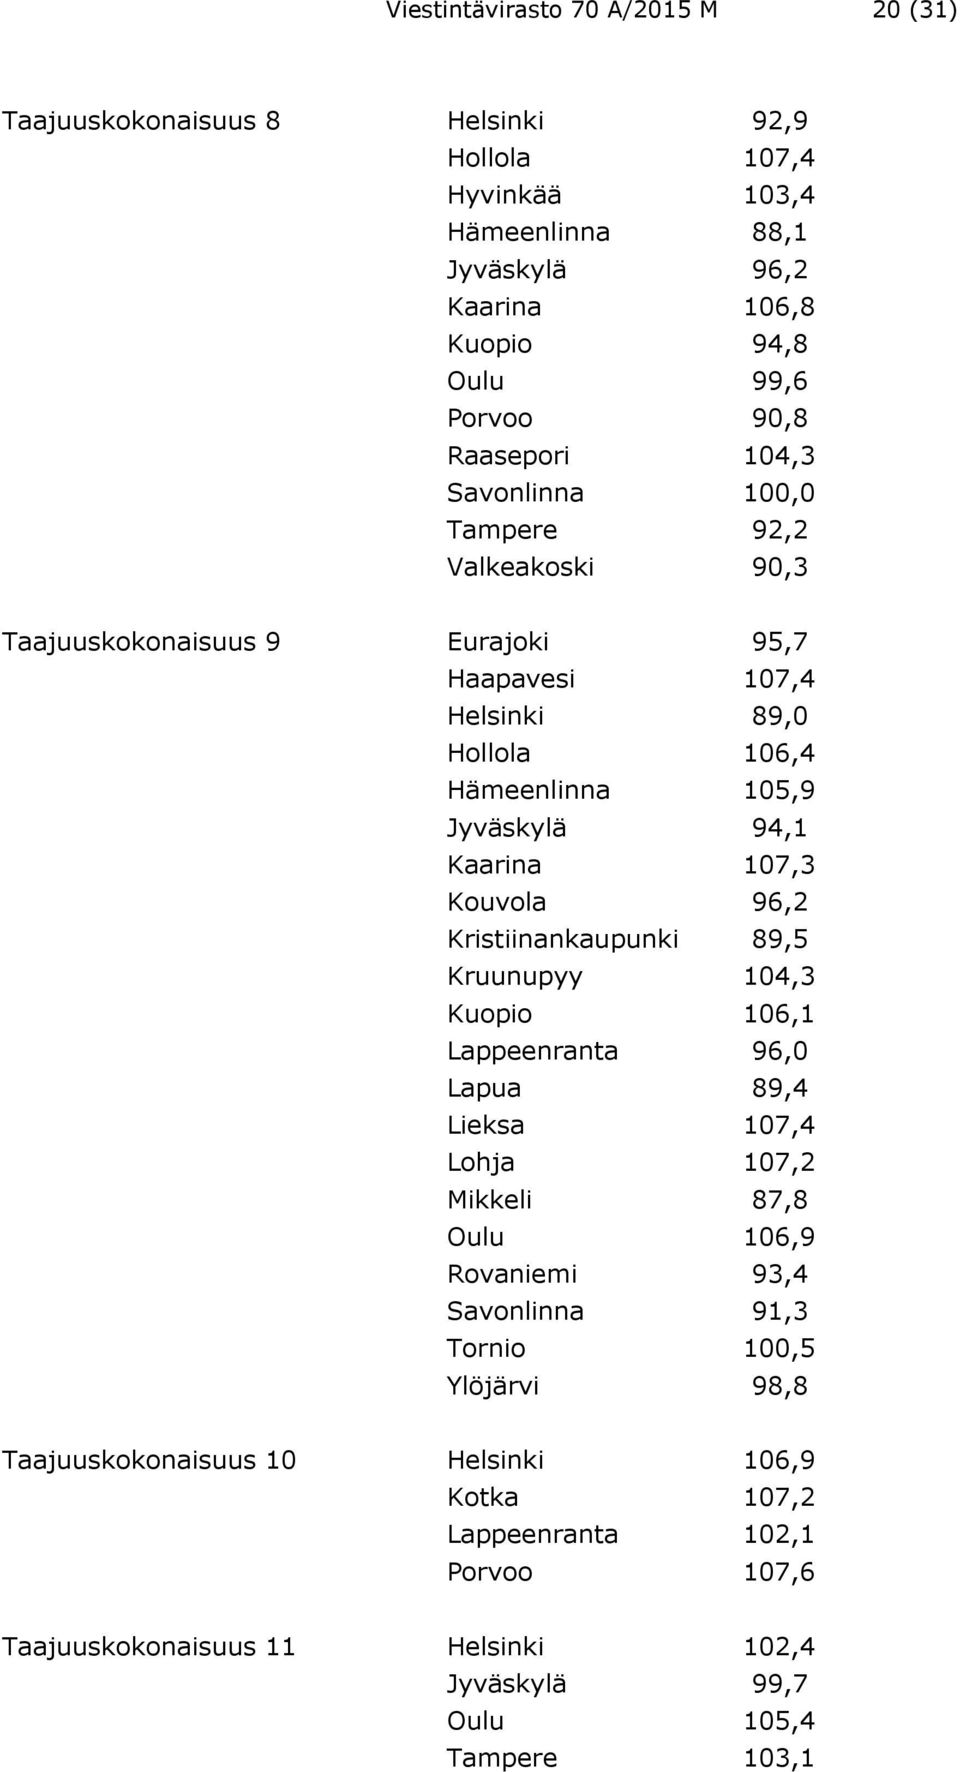 107,3 Kouvola 96,2 Kristiinankaupunki 89,5 Kruunupyy 104,3 Kuopio 106,1 Lappeenranta 96,0 Lapua 89,4 Lieksa 107,4 Lohja 107,2 Mikkeli 87,8 Oulu 106,9 Rovaniemi 93,4 Savonlinna 91,3